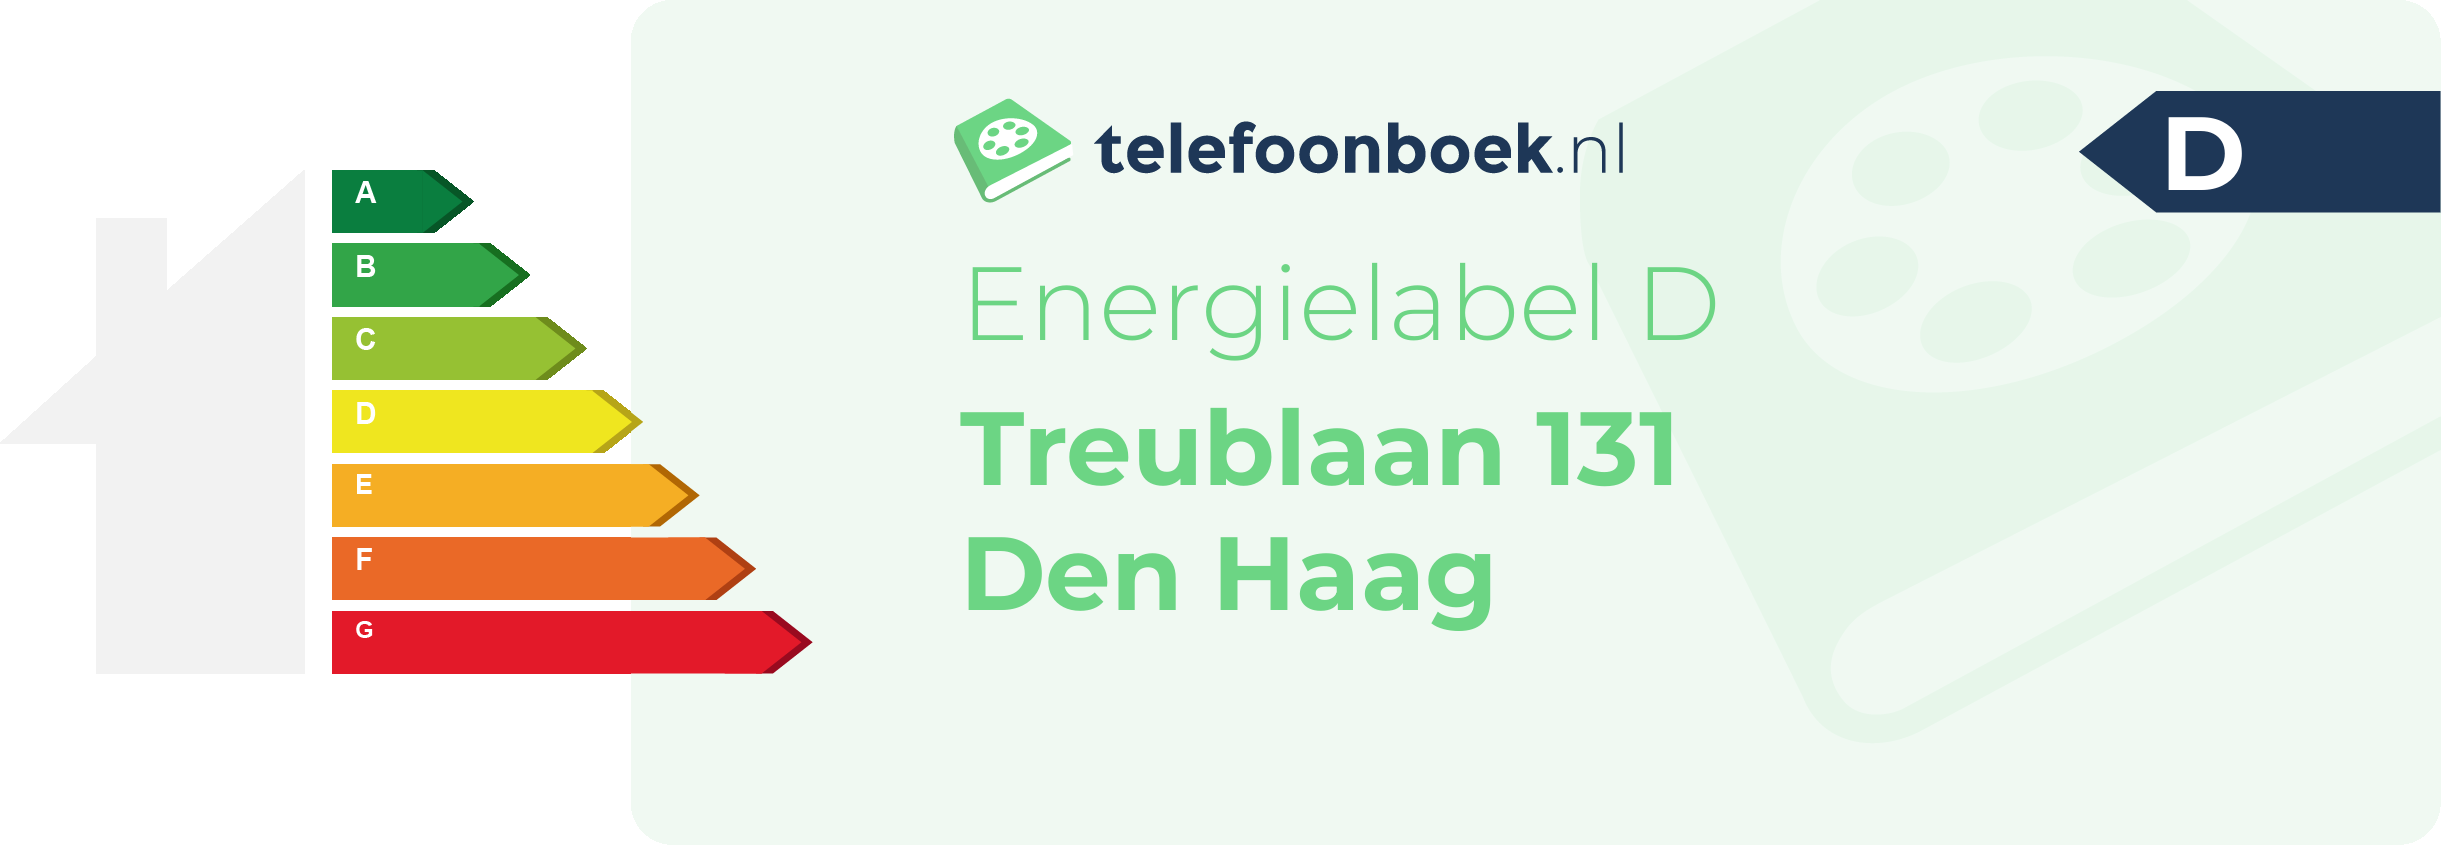 Energielabel Treublaan 131 Den Haag